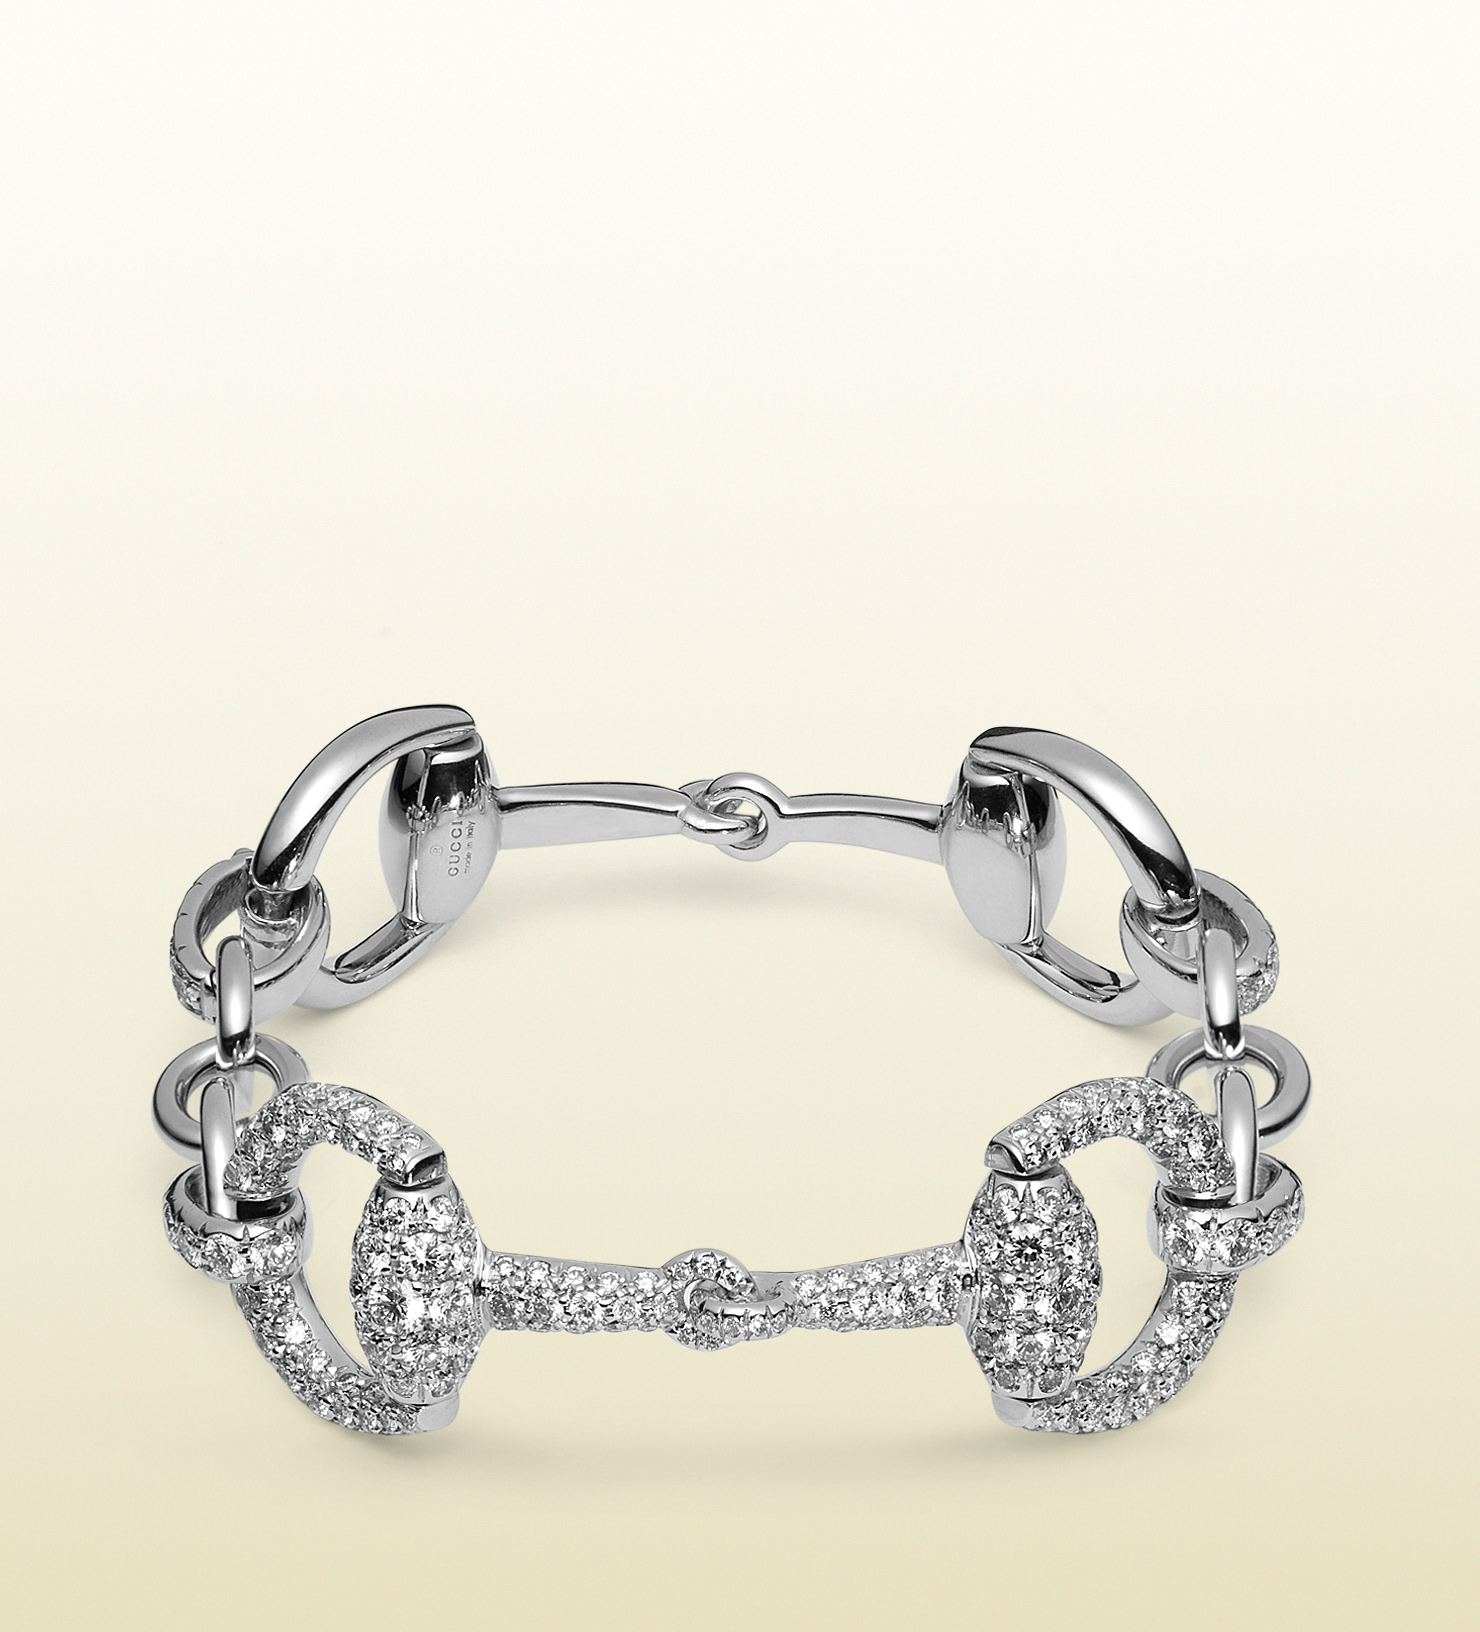 Lyst - Gucci Horsebit Diamond Bracelet in White Gold in White